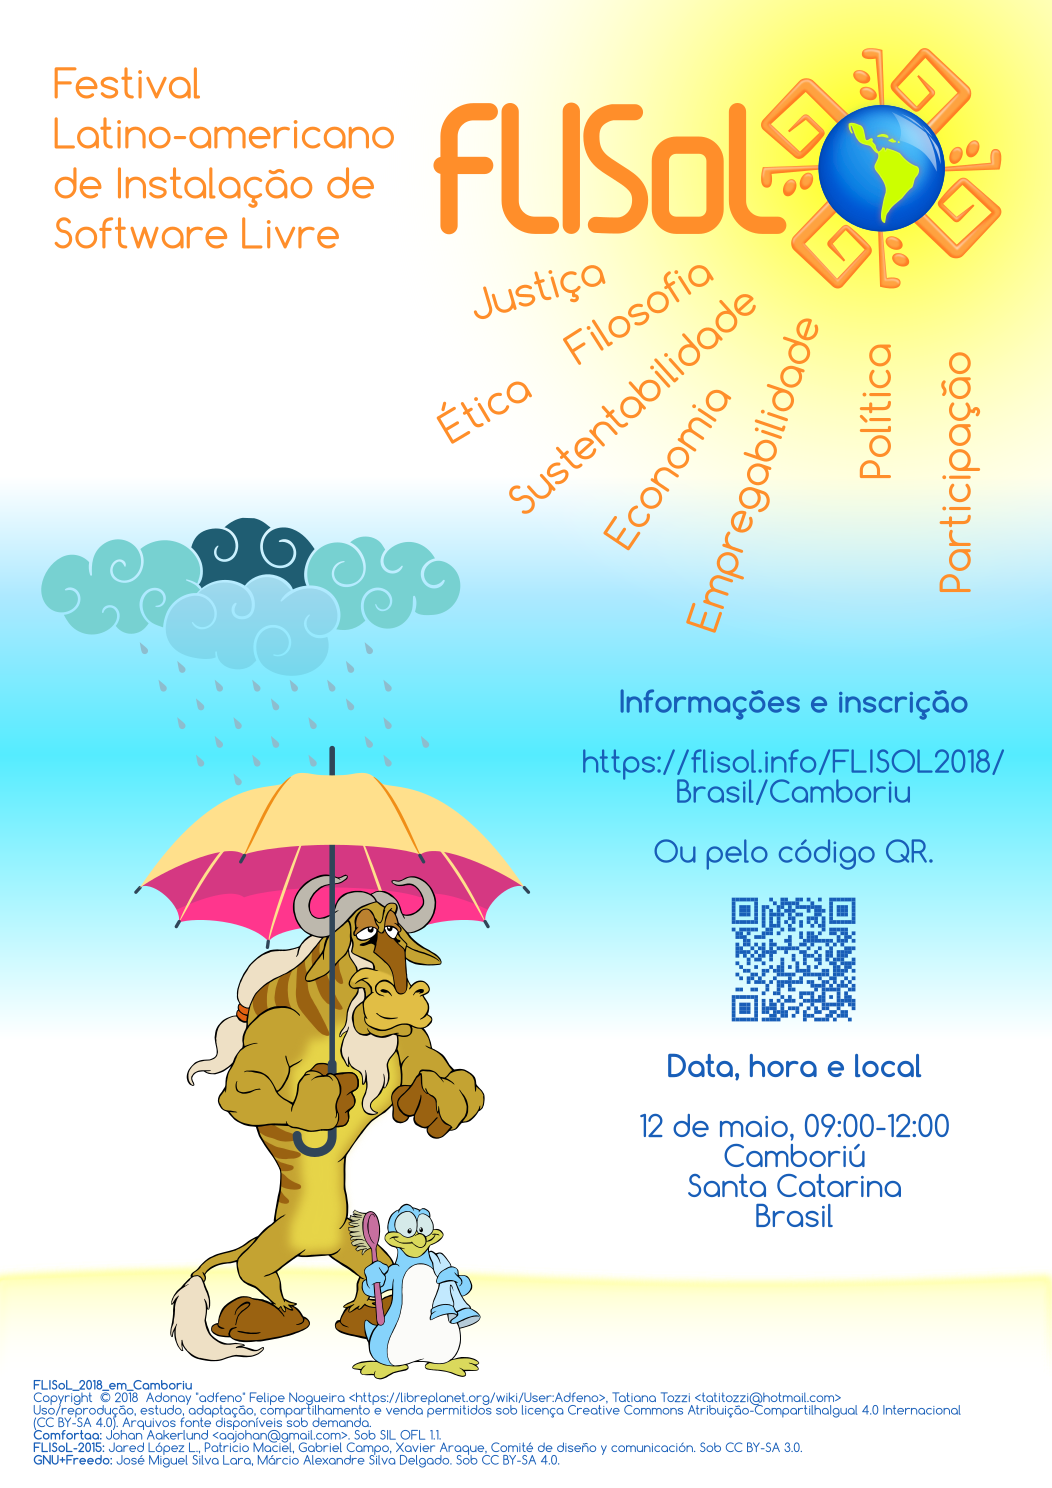 GNU e Freedo de CrazyToon em uma praia. GNU segurando um guarda-chuva para proteger Freedo de uma nuvem, enquanto esperam o sol do FLISoL chegar. A imagem possui código QR e informações do evento sobrepondo a figura.